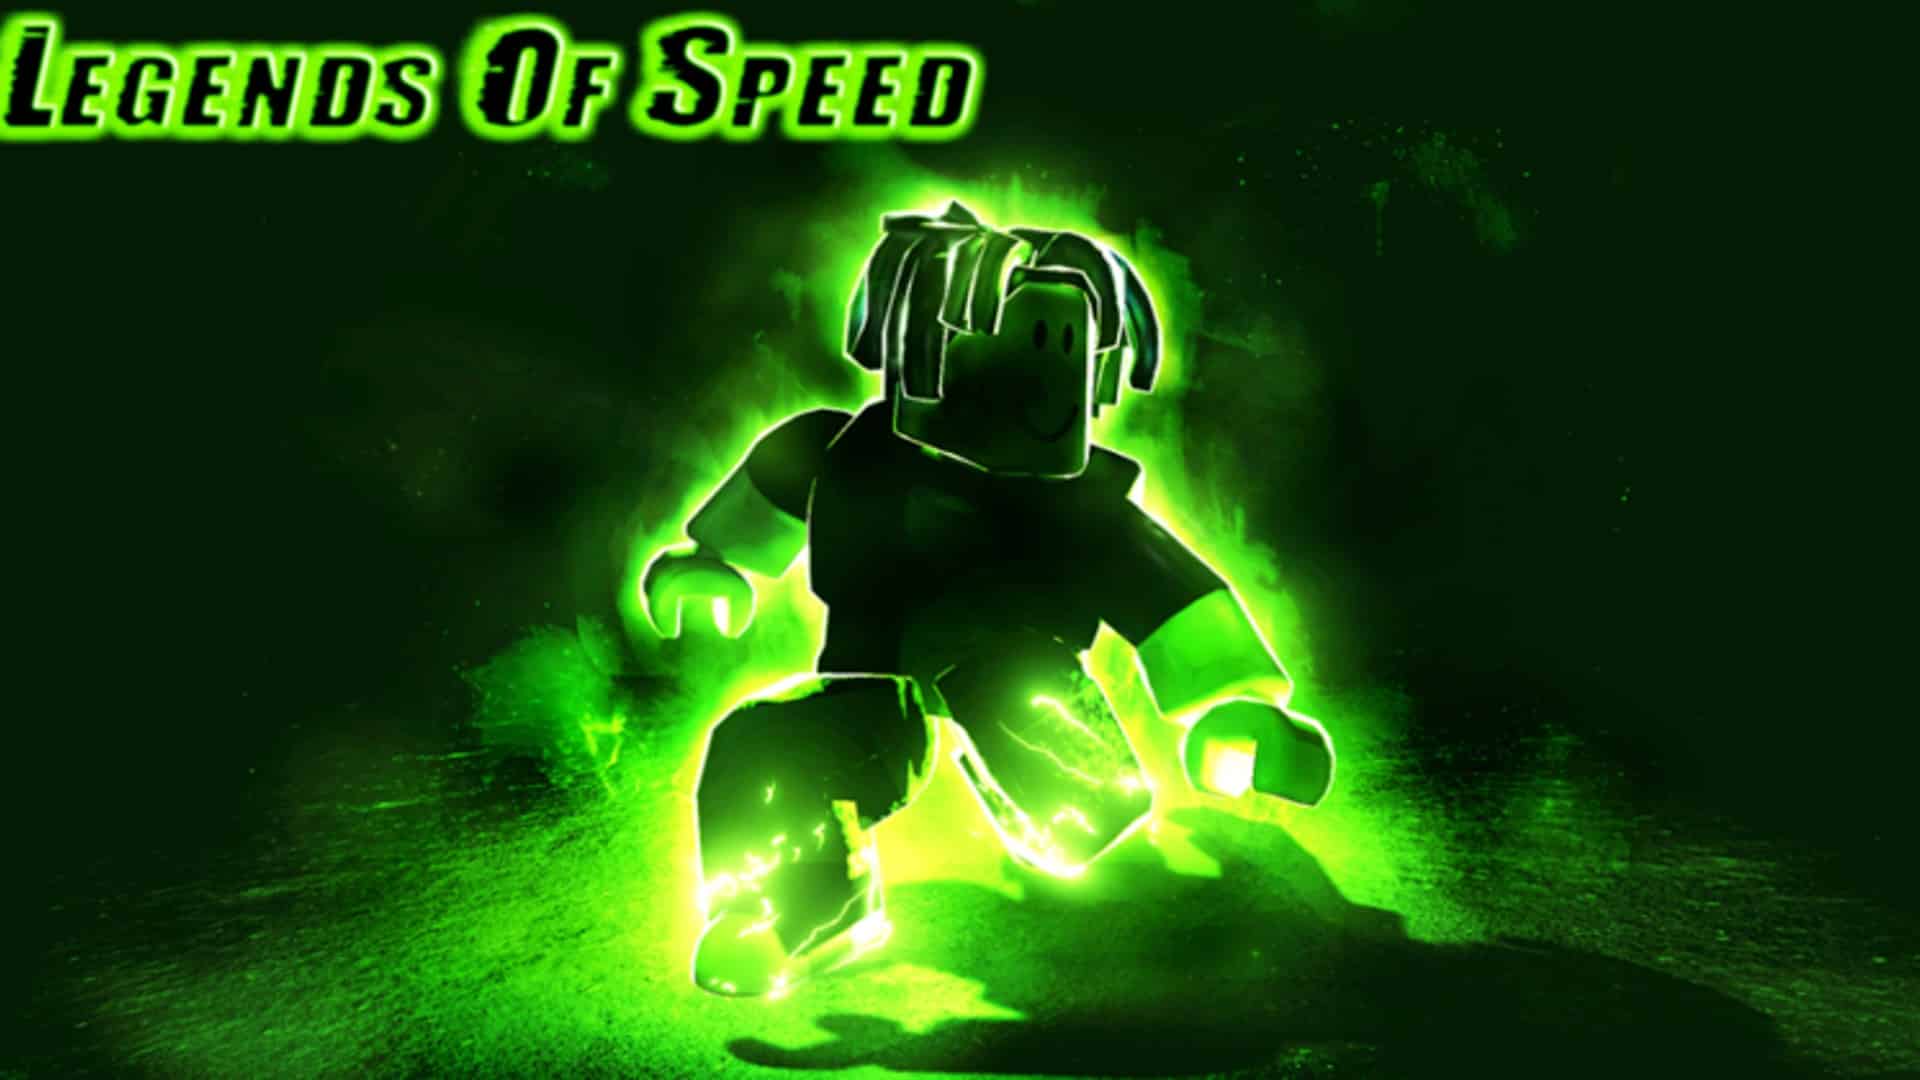 Legends of Speed official art work